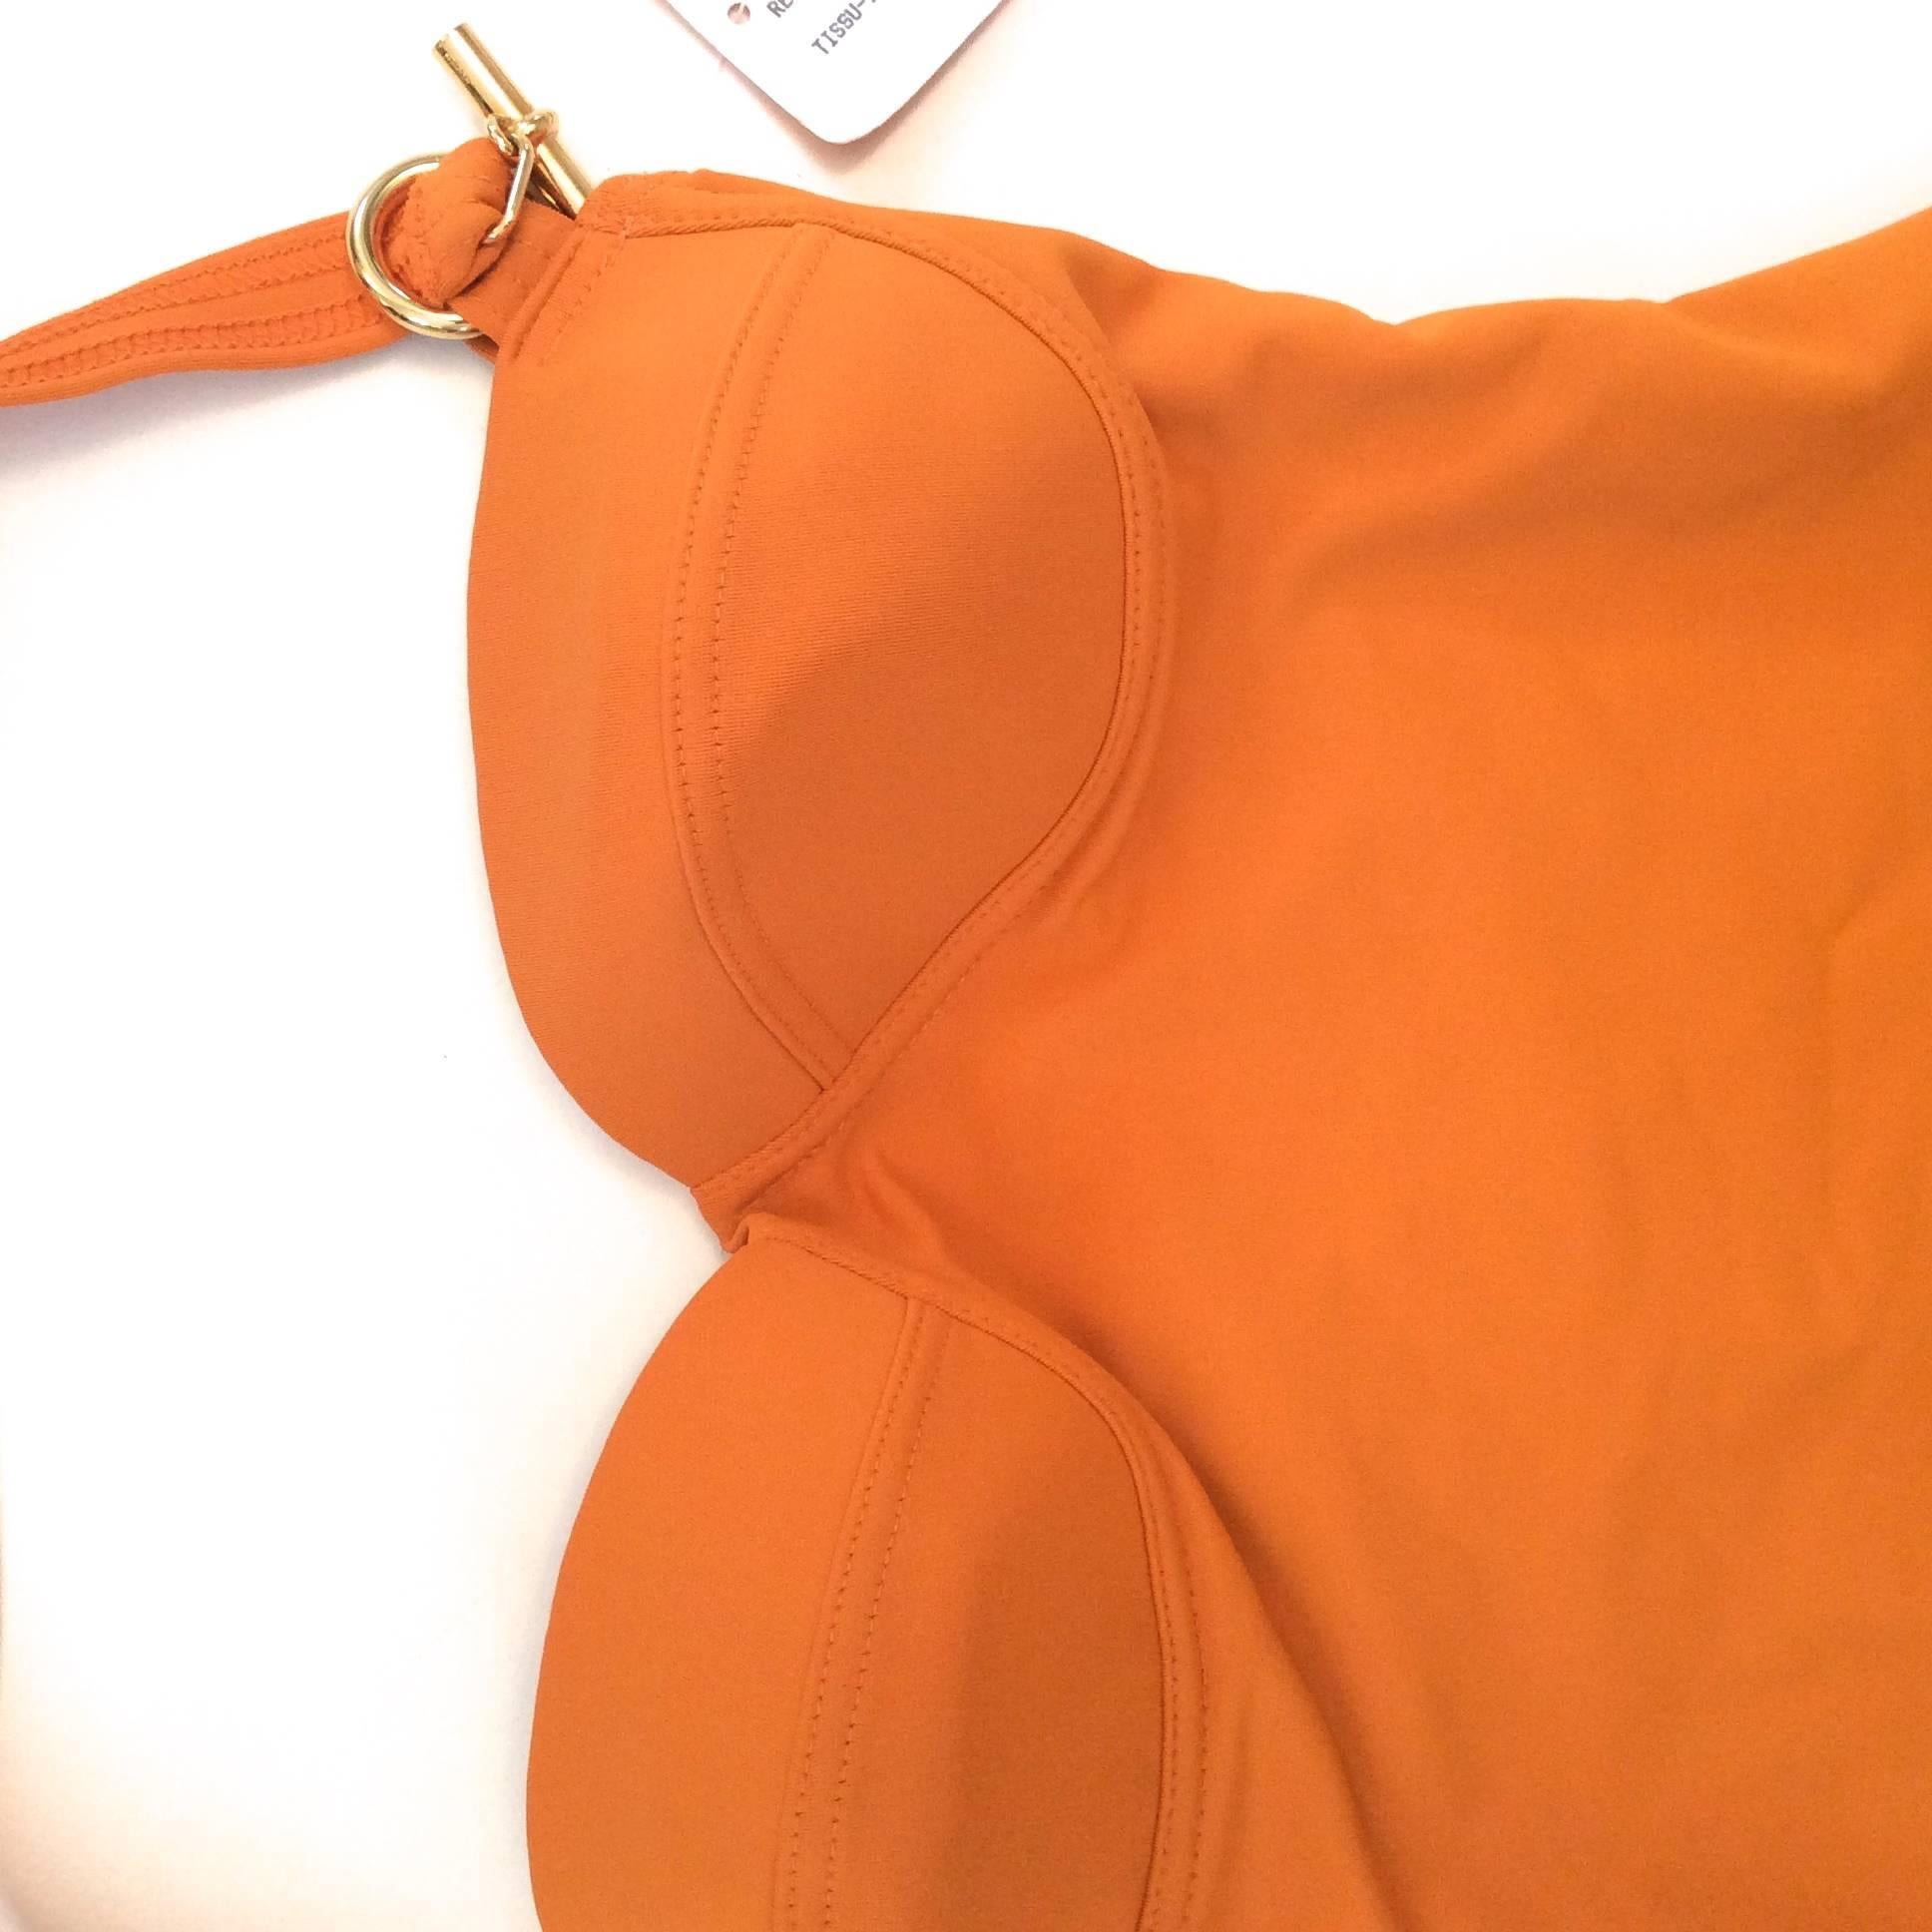 orange bathing suits